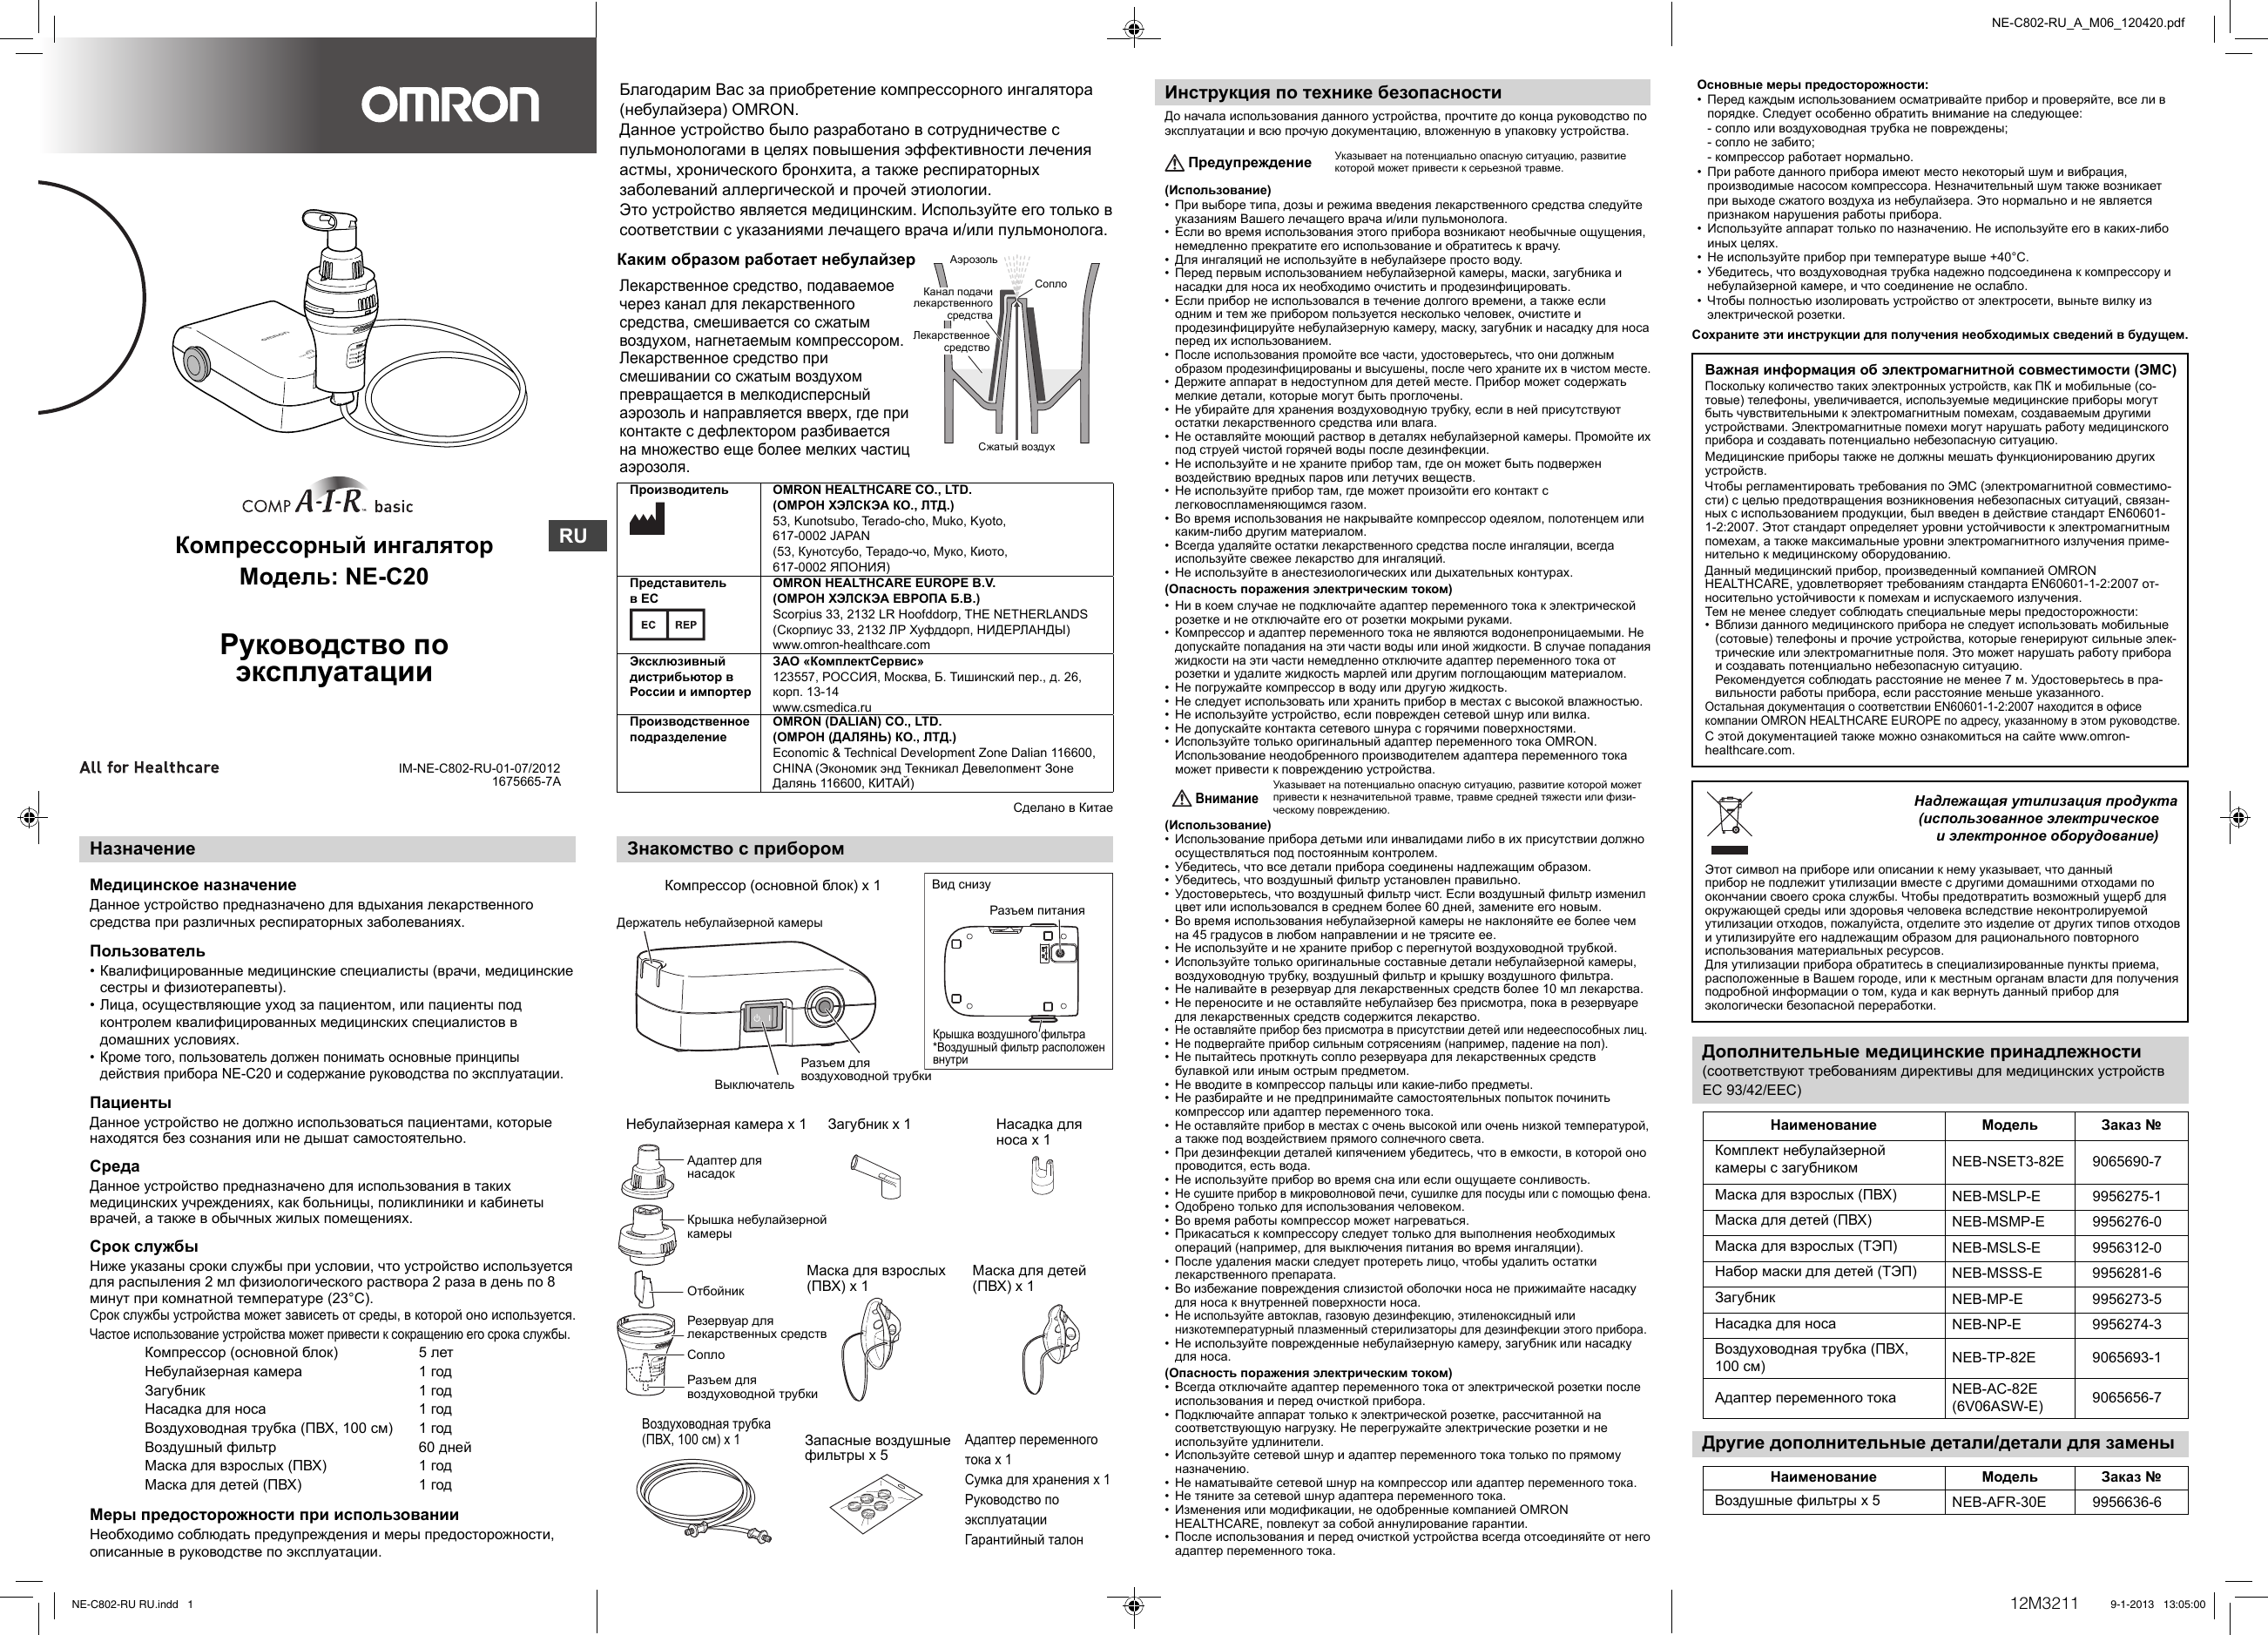 инструкция к применению ингалятора omron